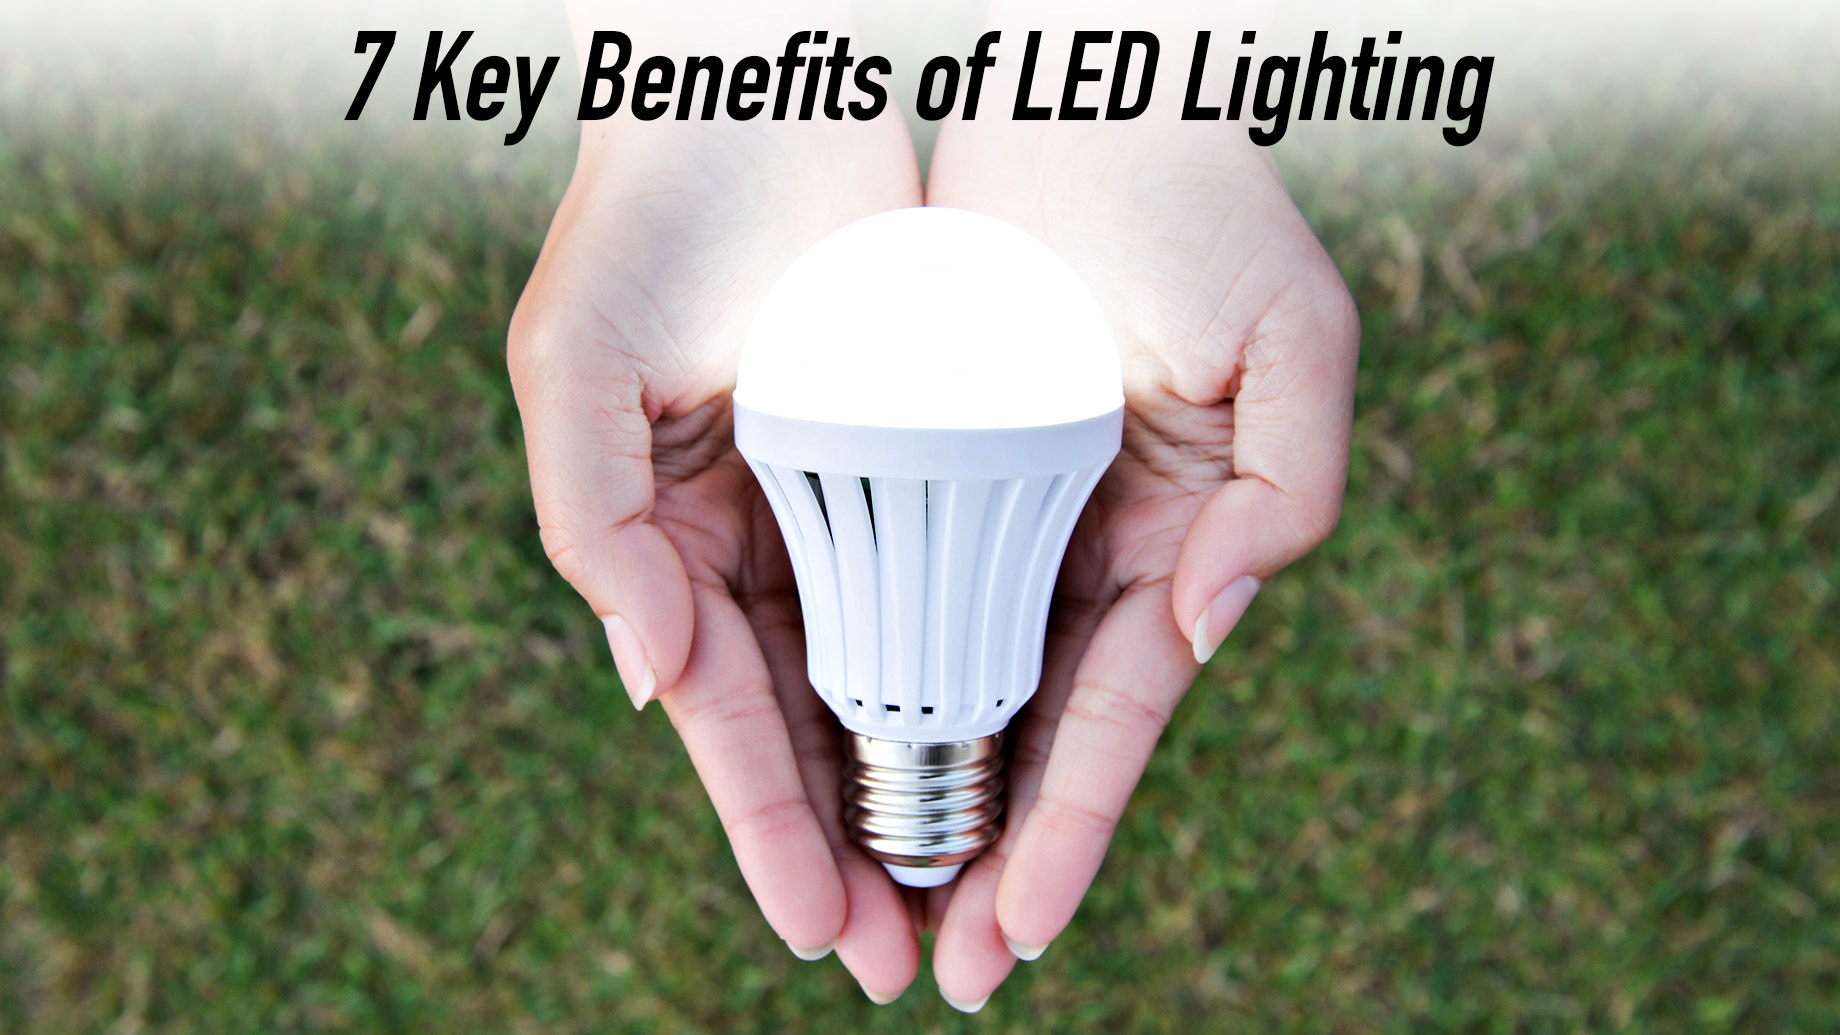 Shine Bright - 7 Key Benefits of LED Lighting